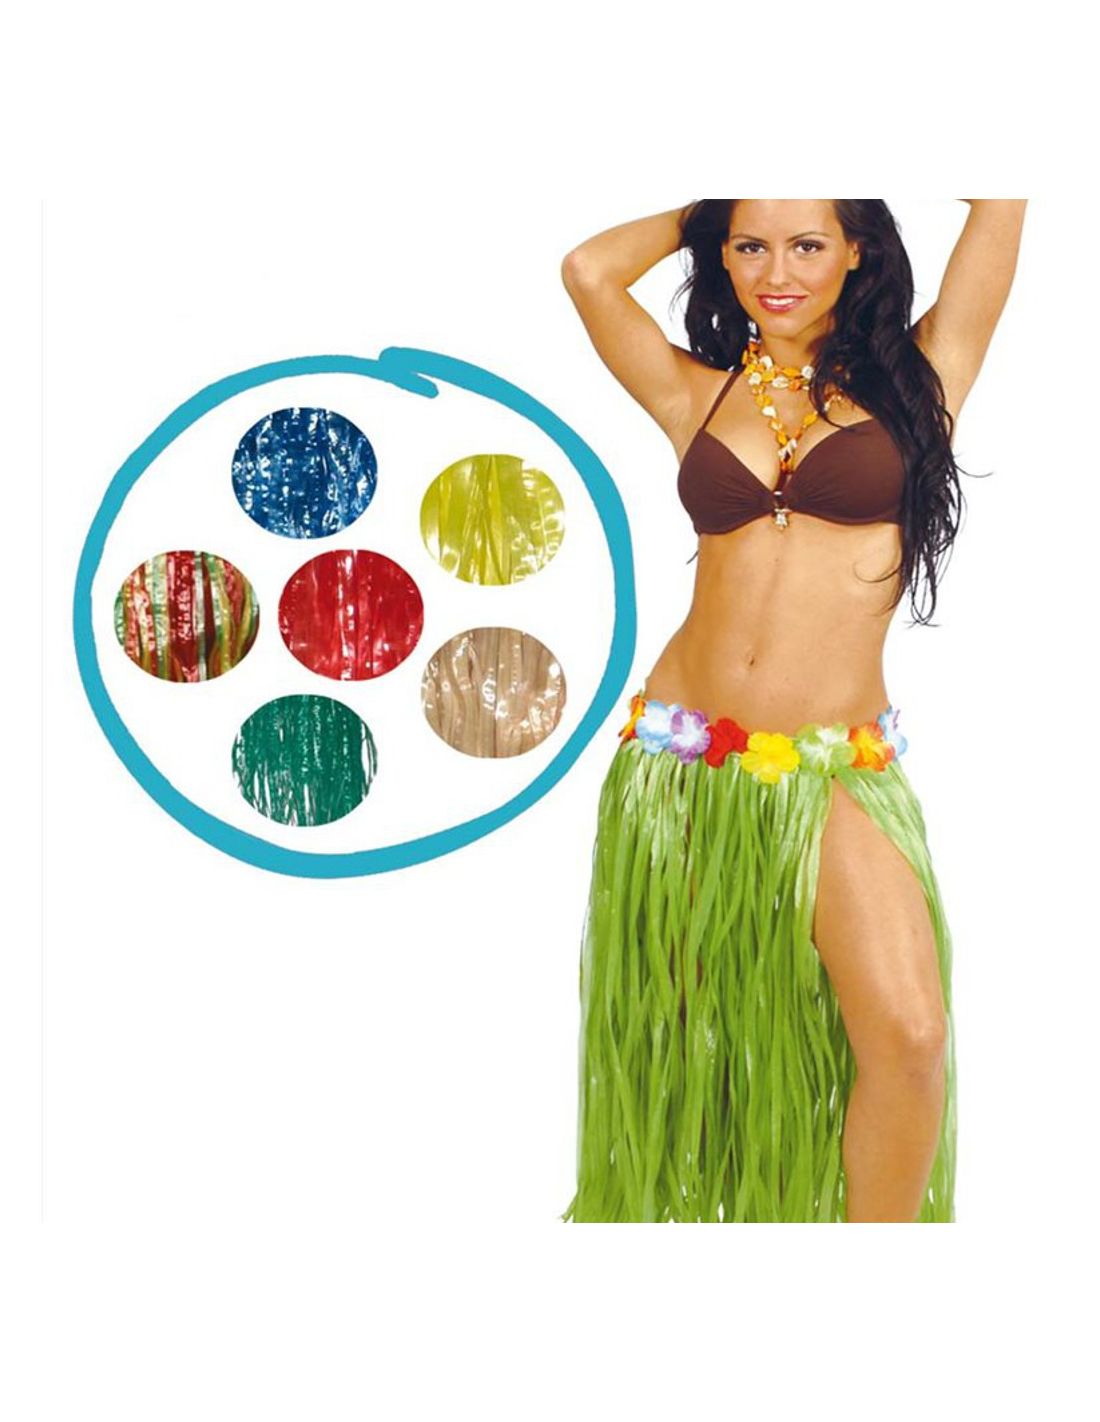 Comprar Falda Hawaiana Flores Verde online